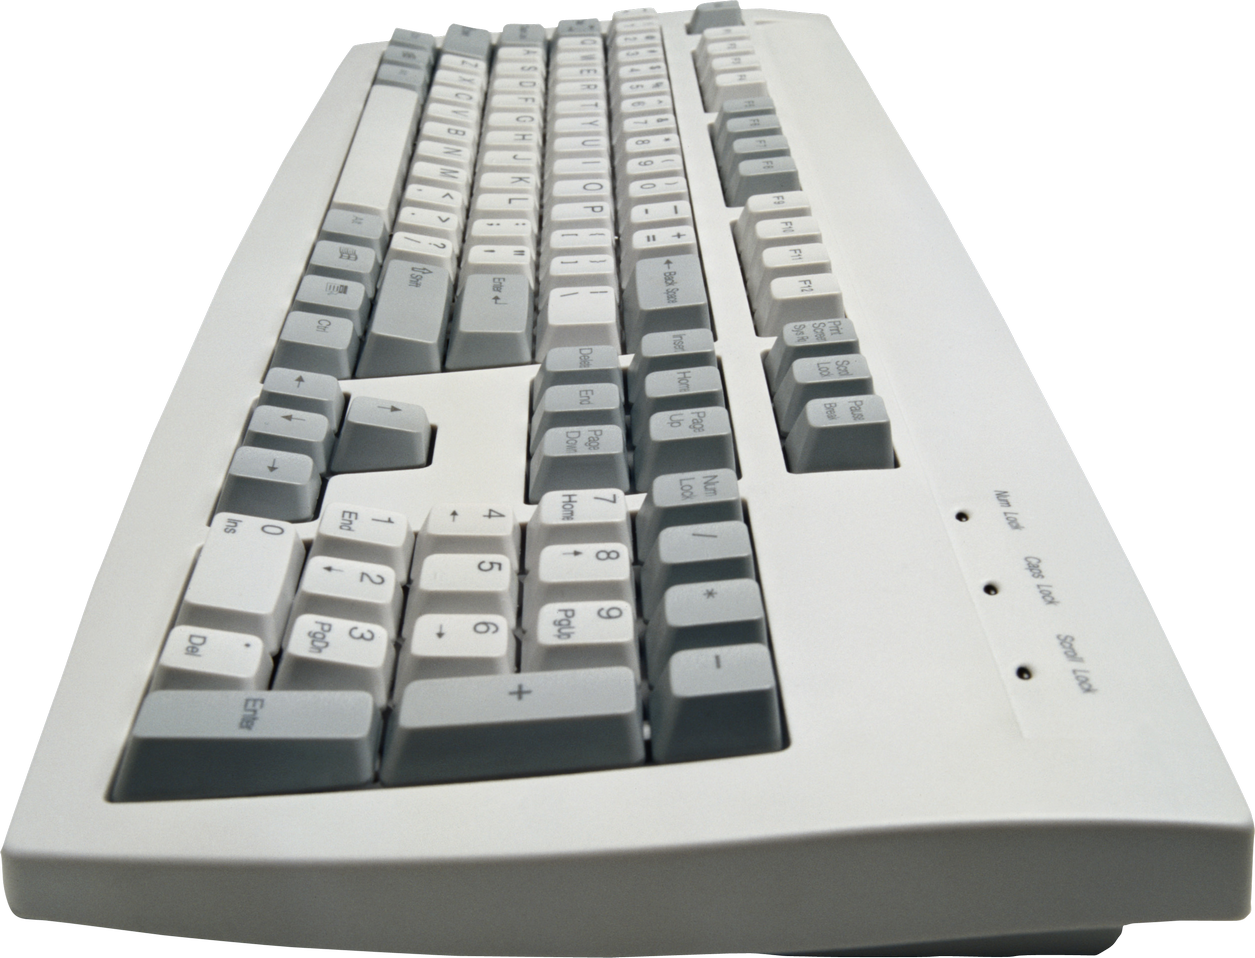 Keyboard PNG Image